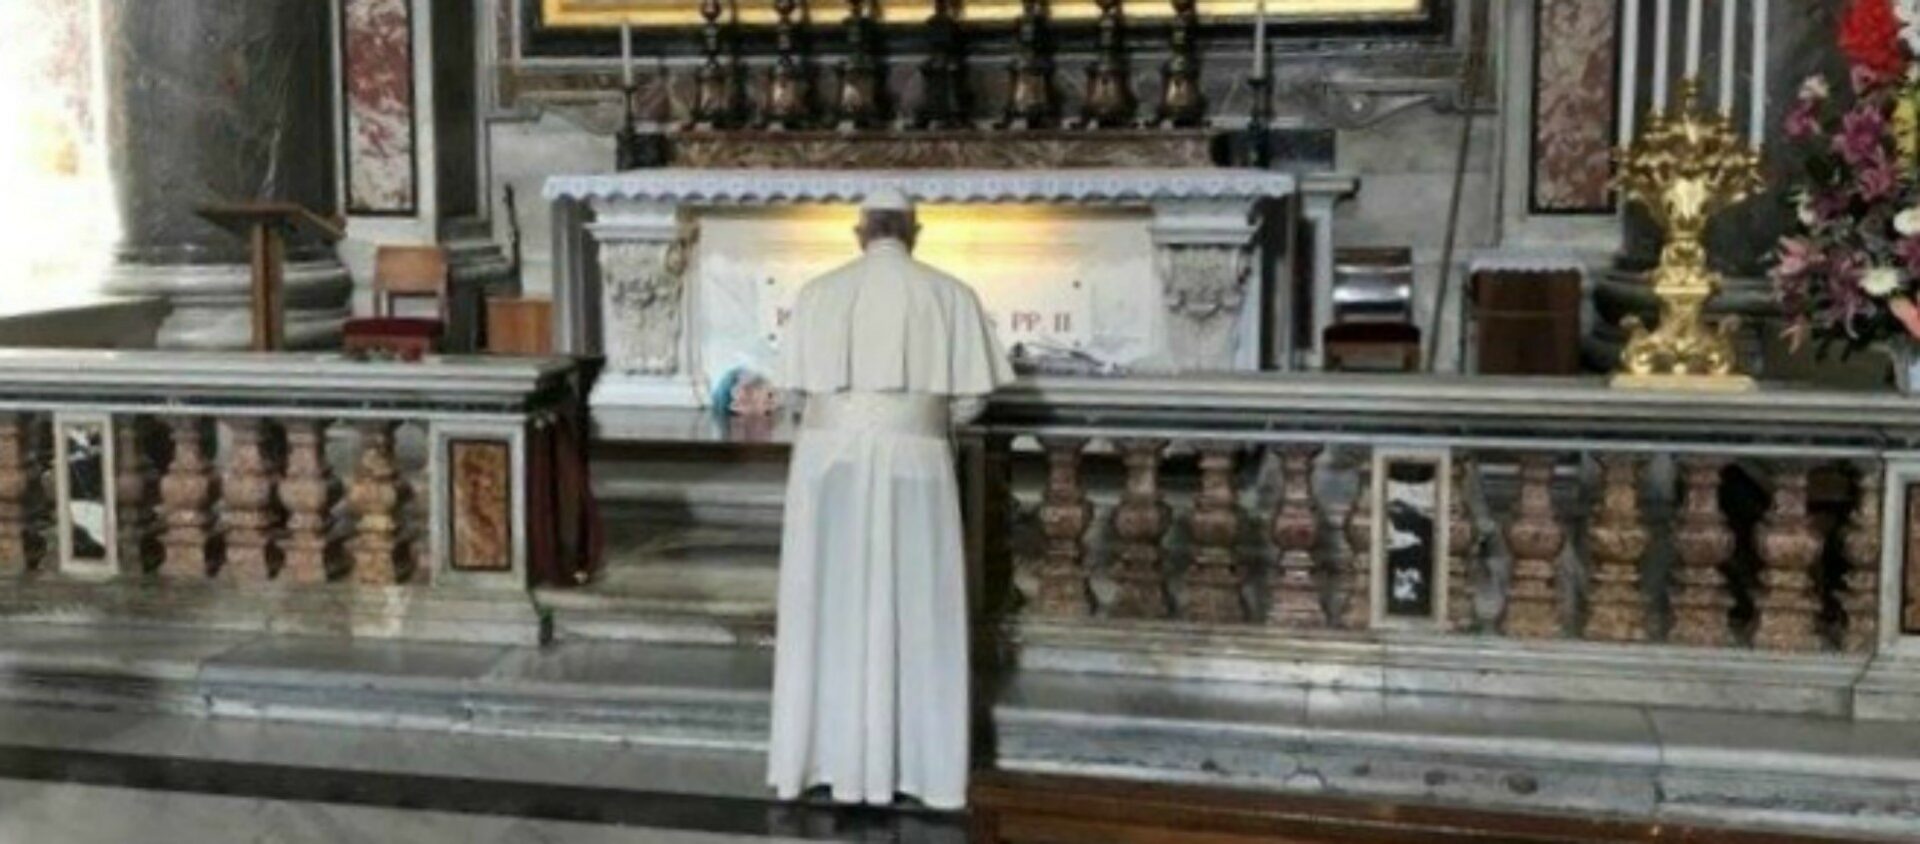 Le pape François en prière devant la tombe de saint Jean-Paul II dans la basilique Saint-Pierre de Rome, le 22 octobre 2018   | © Vatican Media  